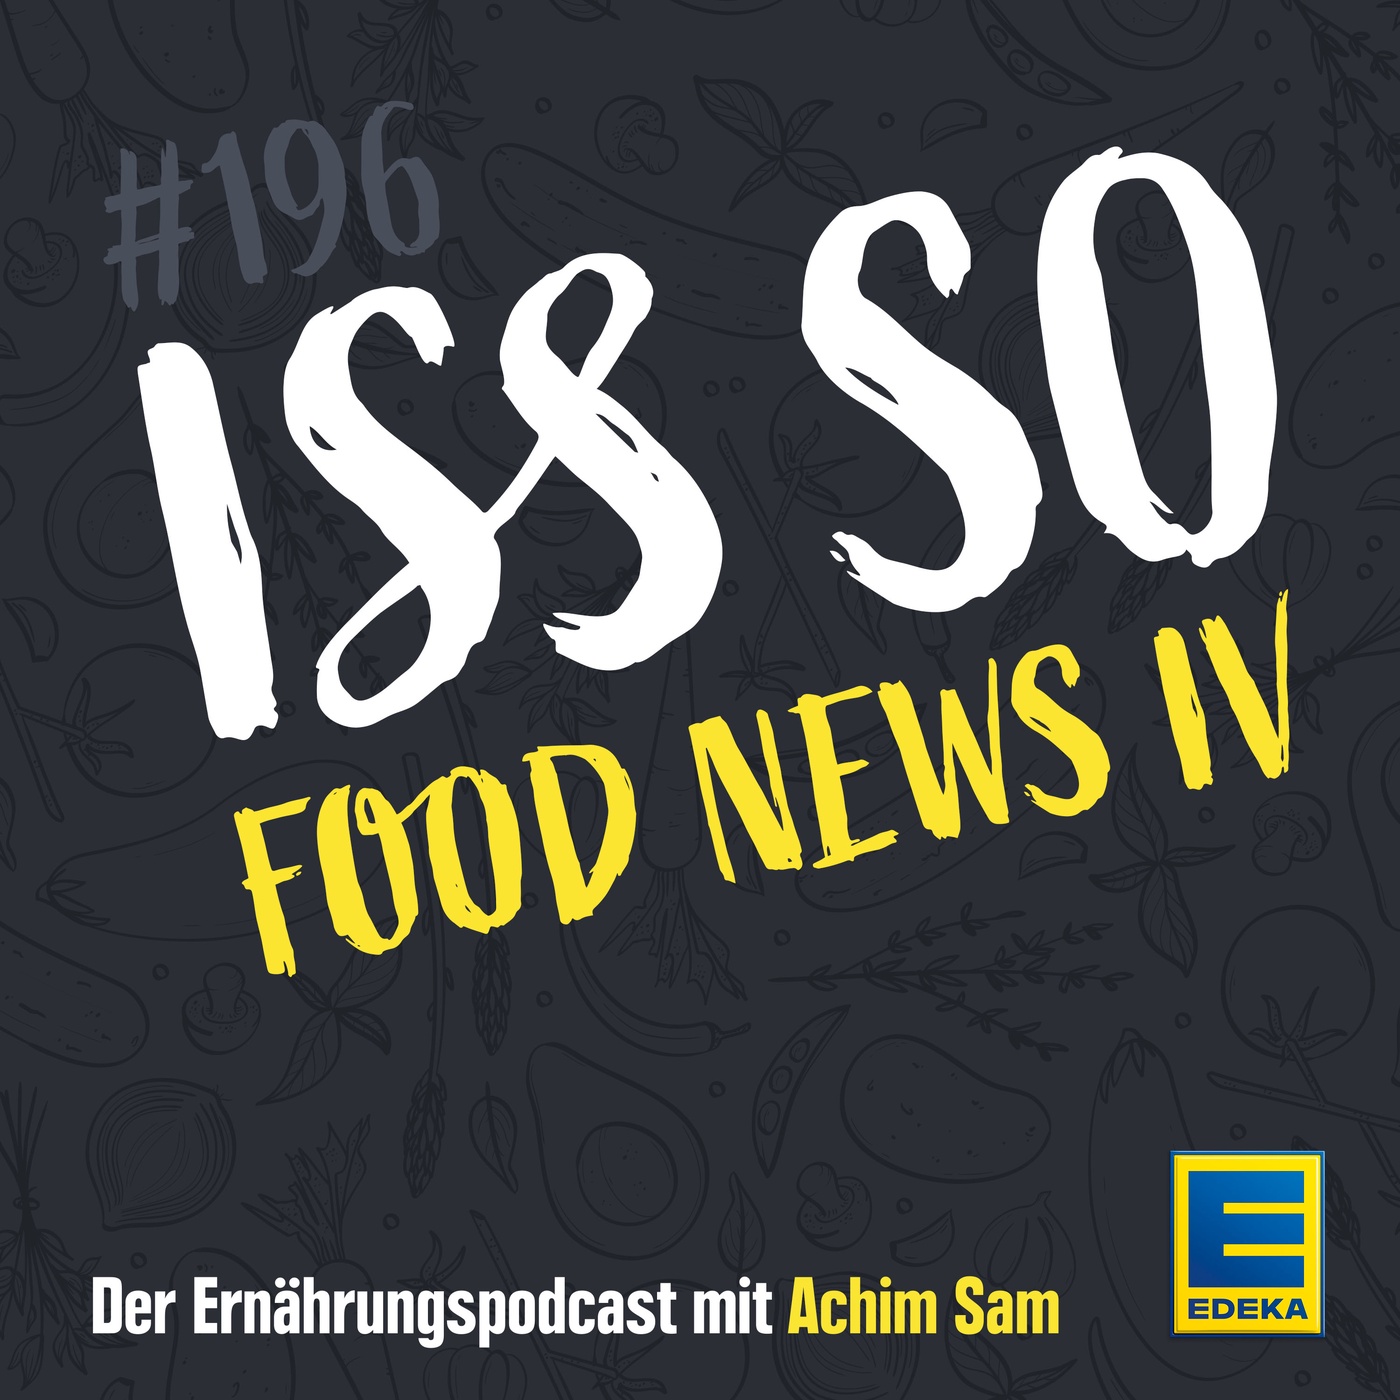 EP 196: Food News IV - Ernährungsstudien, die jede*r kennen sollte